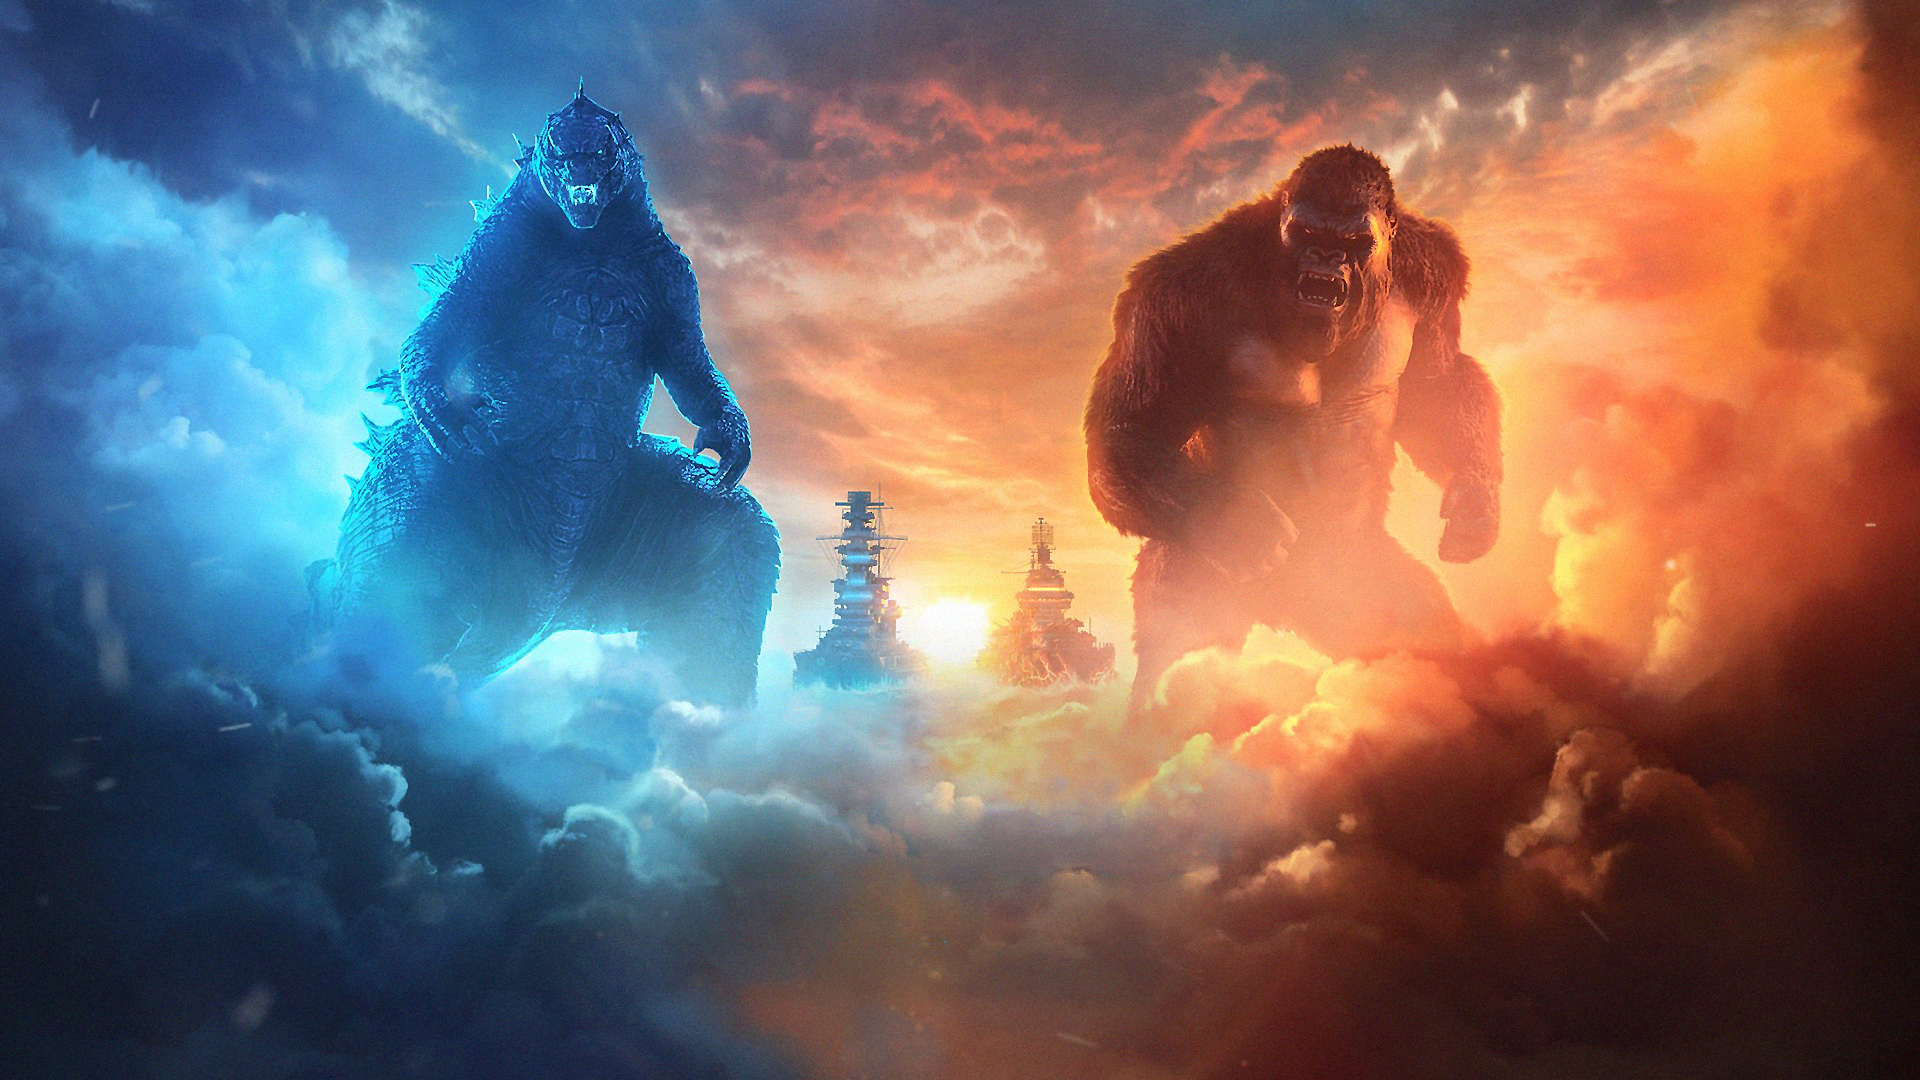 Movie Godzilla vs Kong HD Wallpaper | Background Image